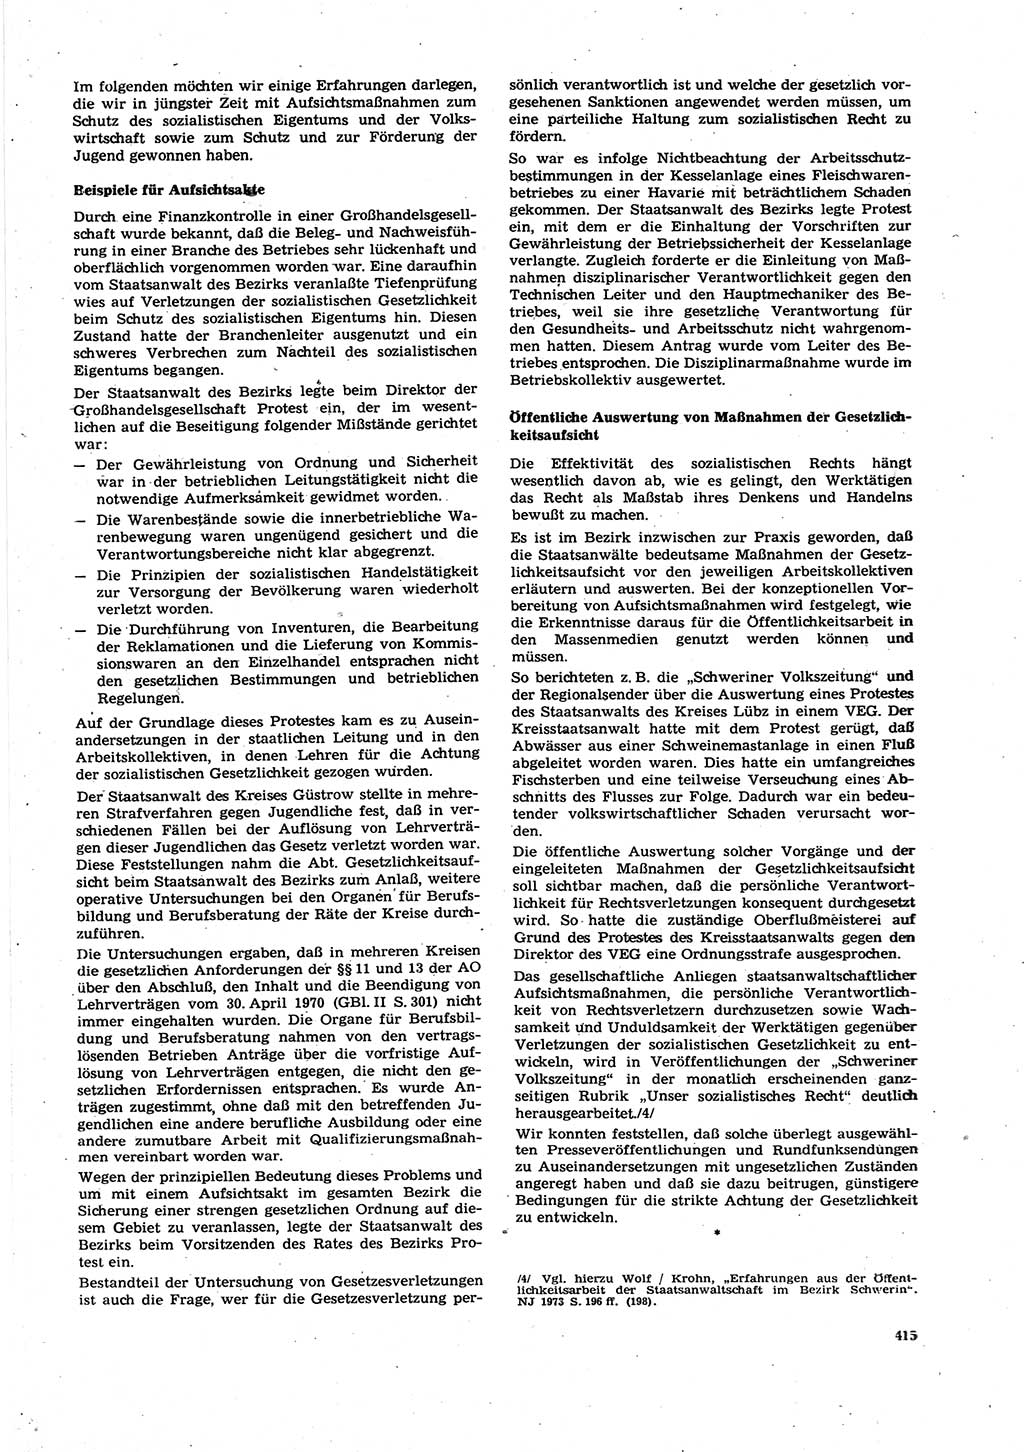 Neue Justiz (NJ), Zeitschrift für Recht und Rechtswissenschaft [Deutsche Demokratische Republik (DDR)], 27. Jahrgang 1973, Seite 415 (NJ DDR 1973, S. 415)